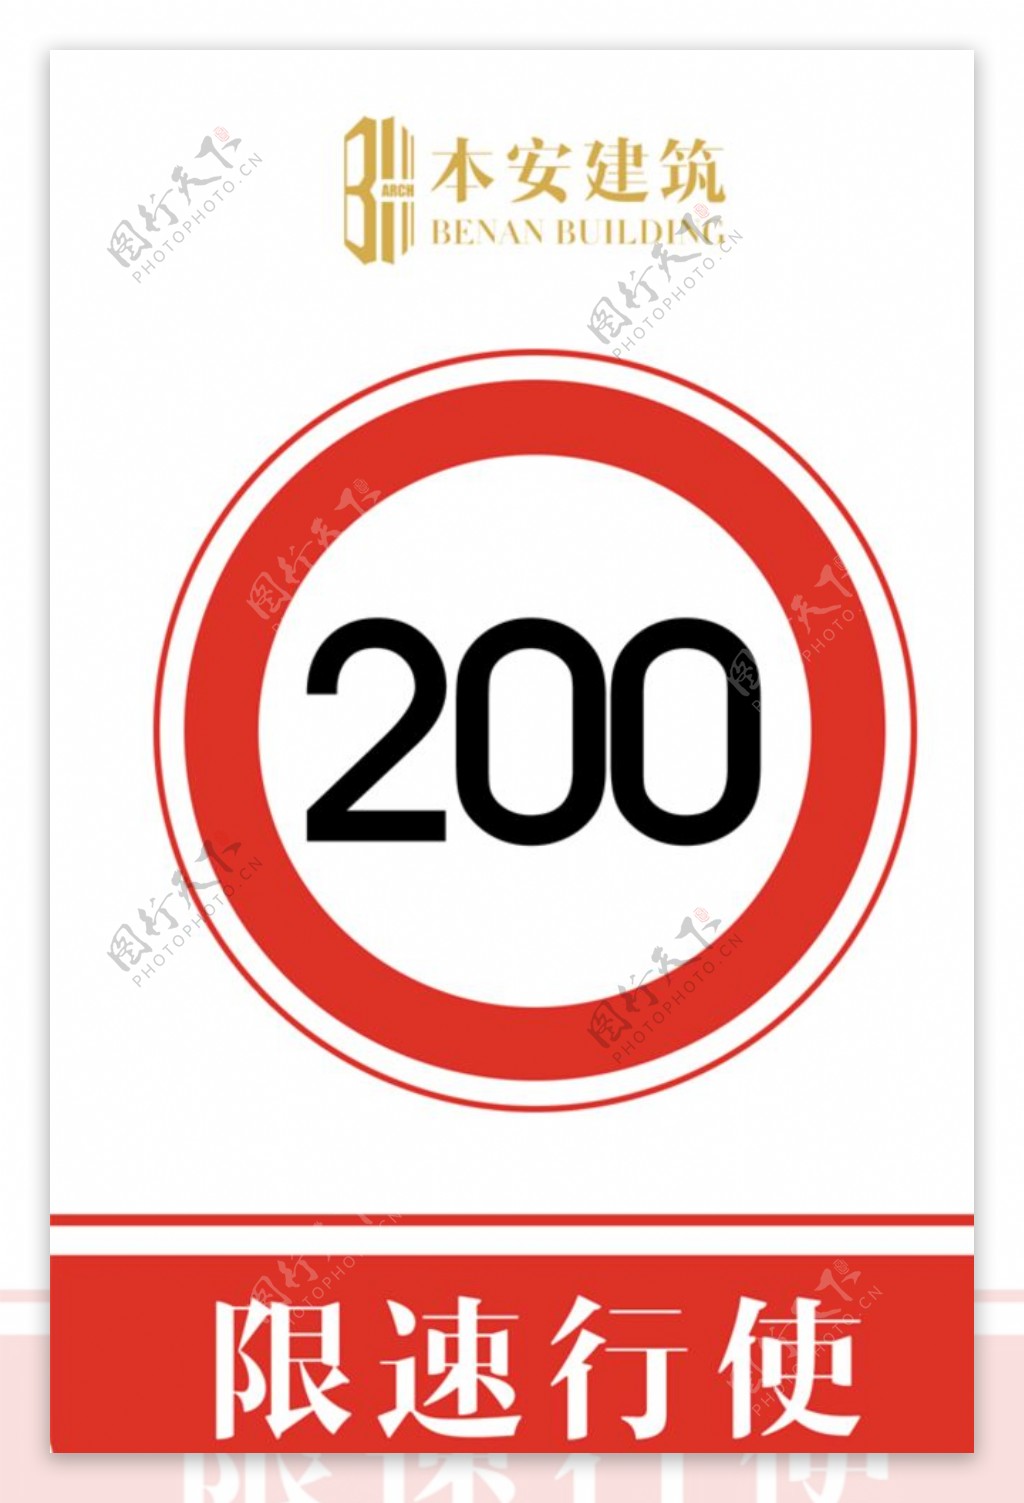 限速行使200公里交通安全标识